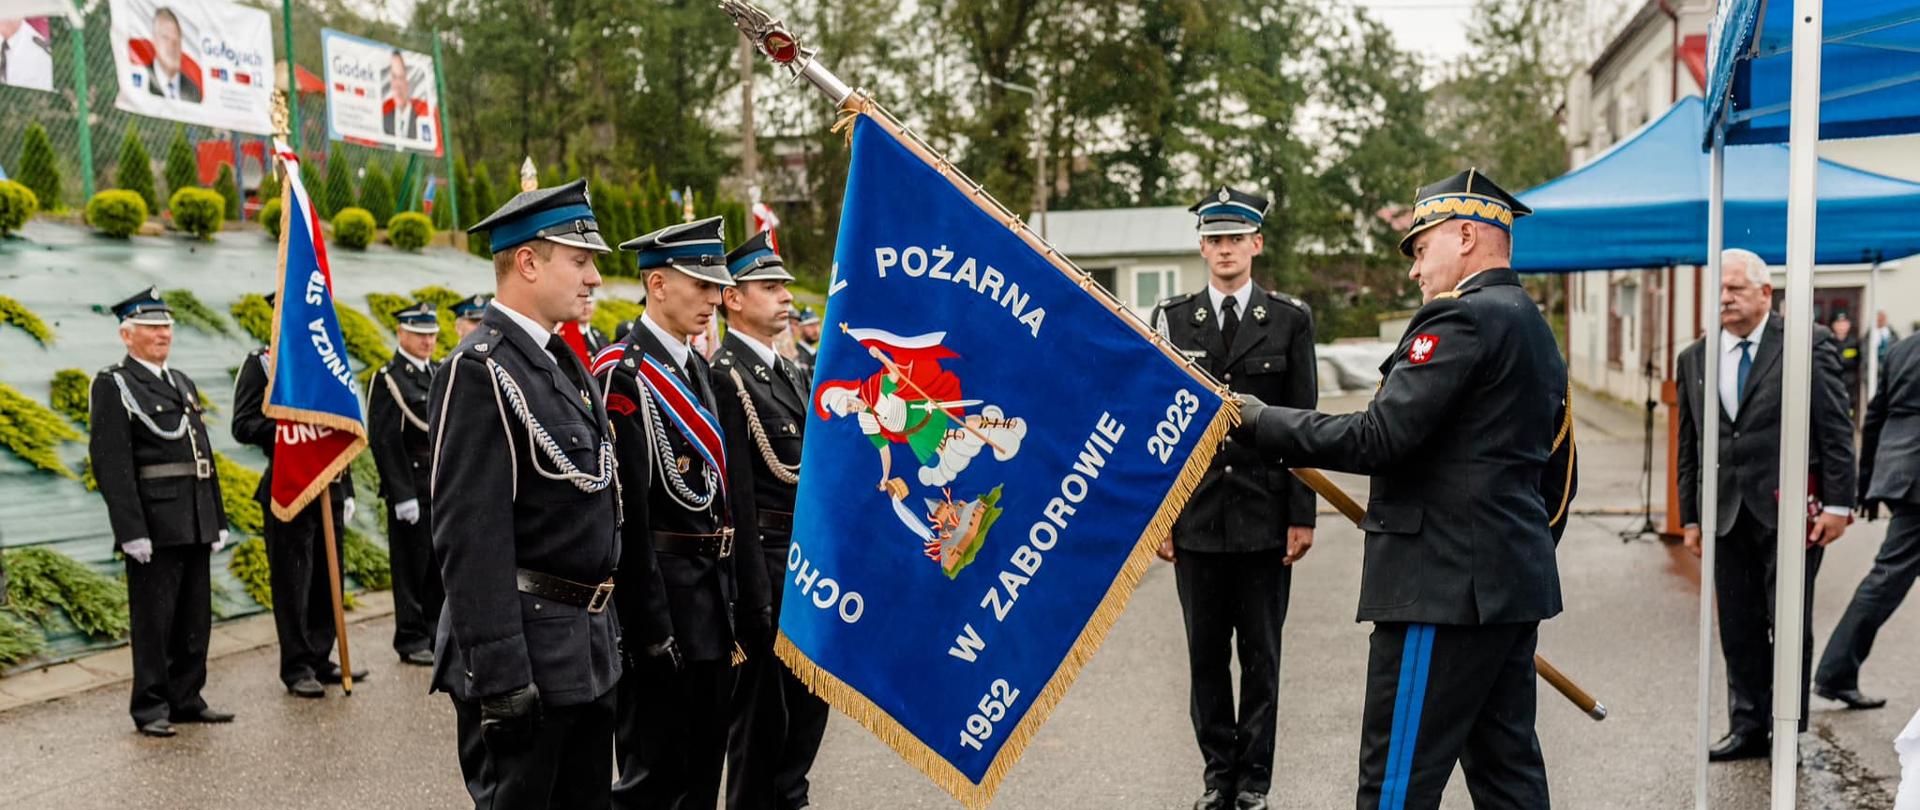 Na zdjęciu został uchwycony moment przekazywania sztandaru przez Komendanta Wojewódzkiego PSP w Rzeszowie w ręce pocztu sztandarowego OSP Zaborów. W tle druhowie OSP stoją w szeregu.